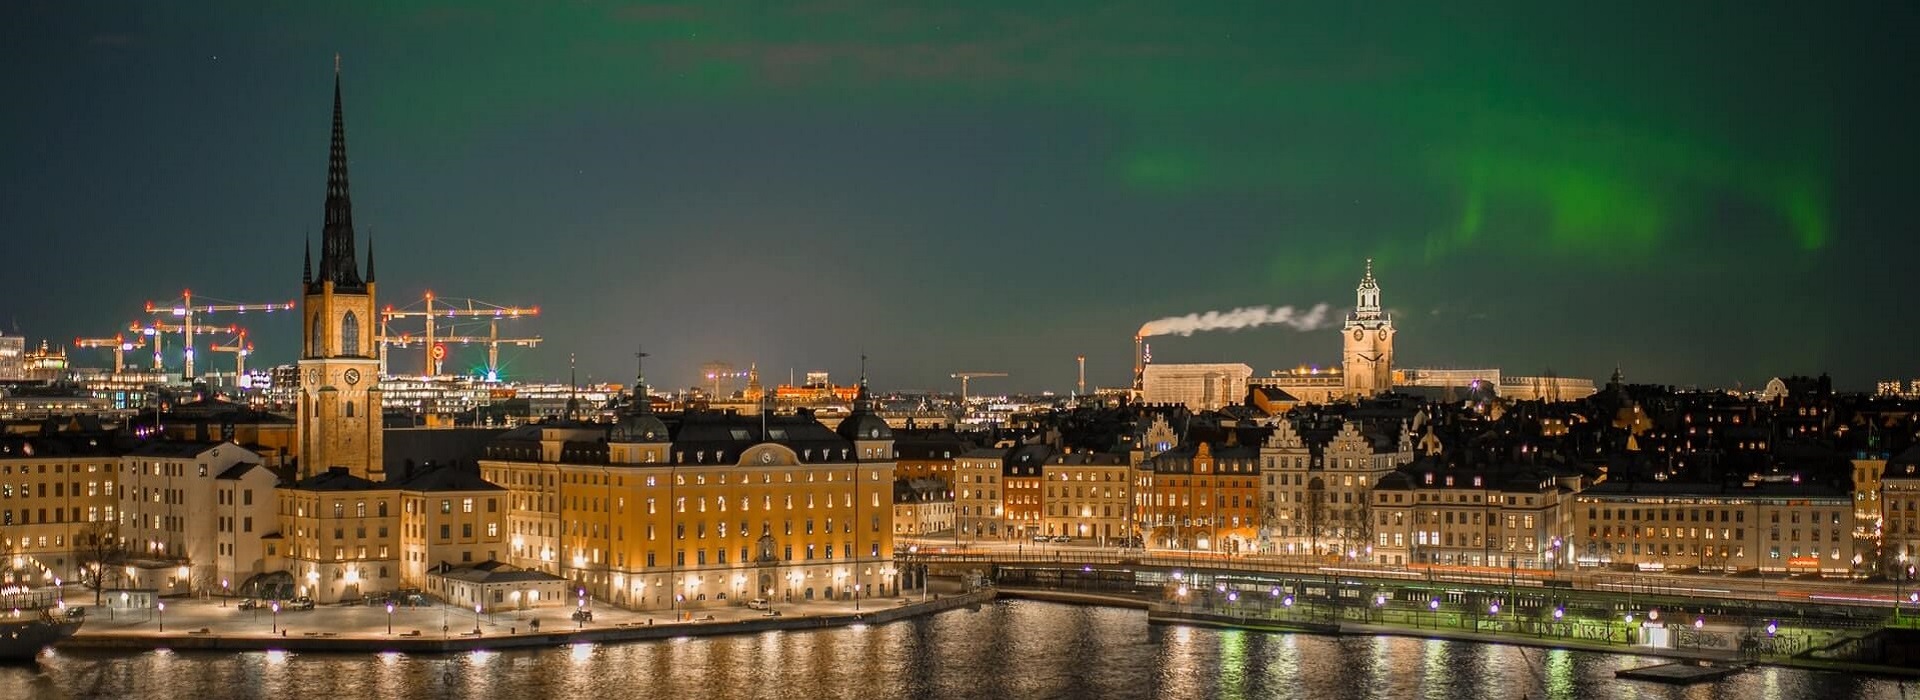 Tehnički i energetski gasovi |  Stadfirma i Stockholm